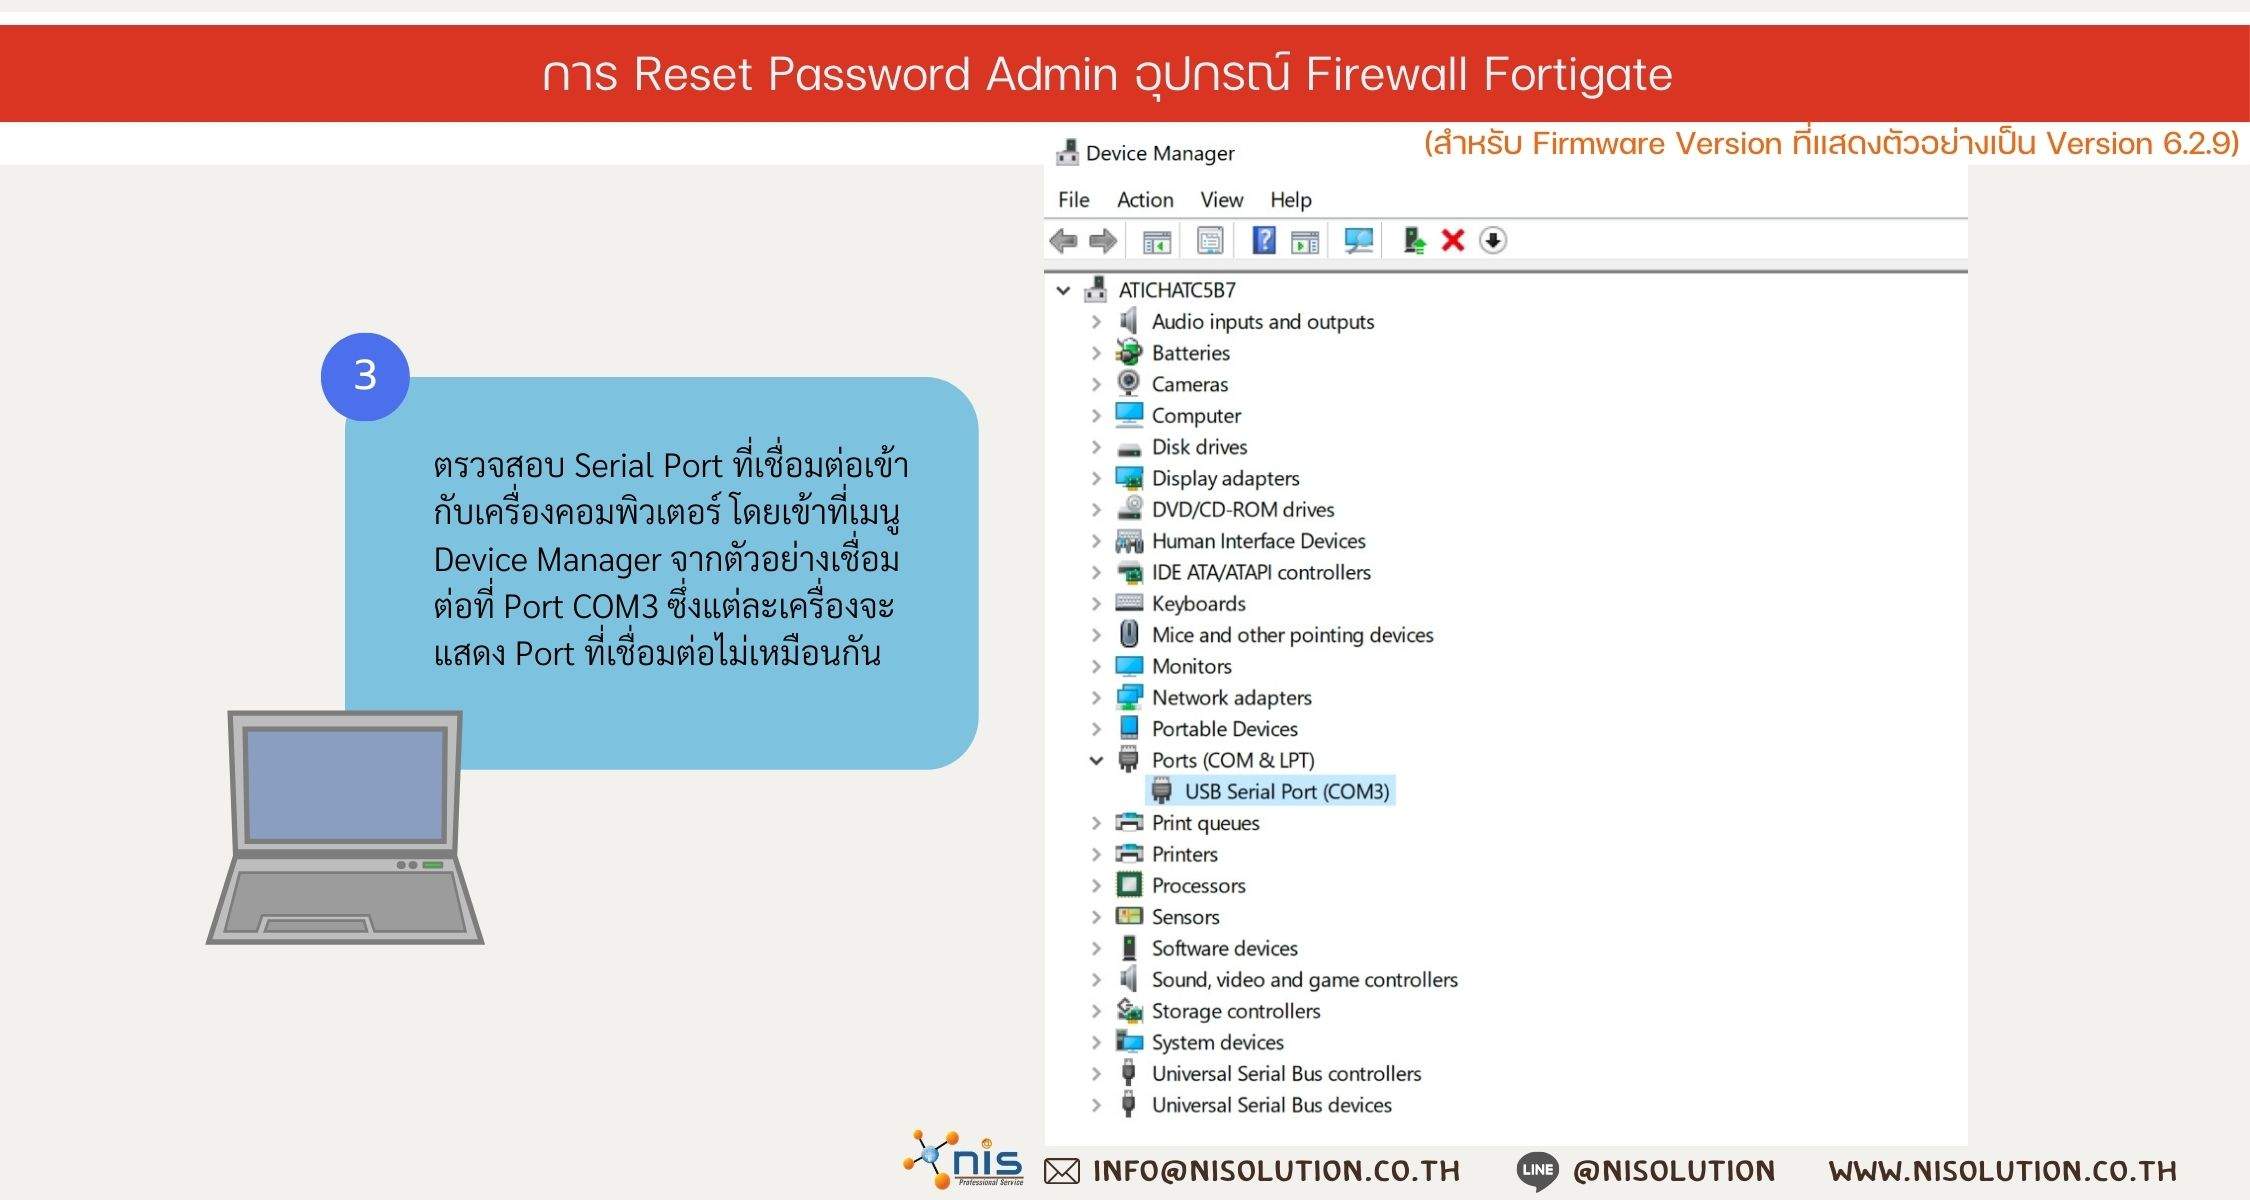 Reset Password Admin Firewall Fortigate